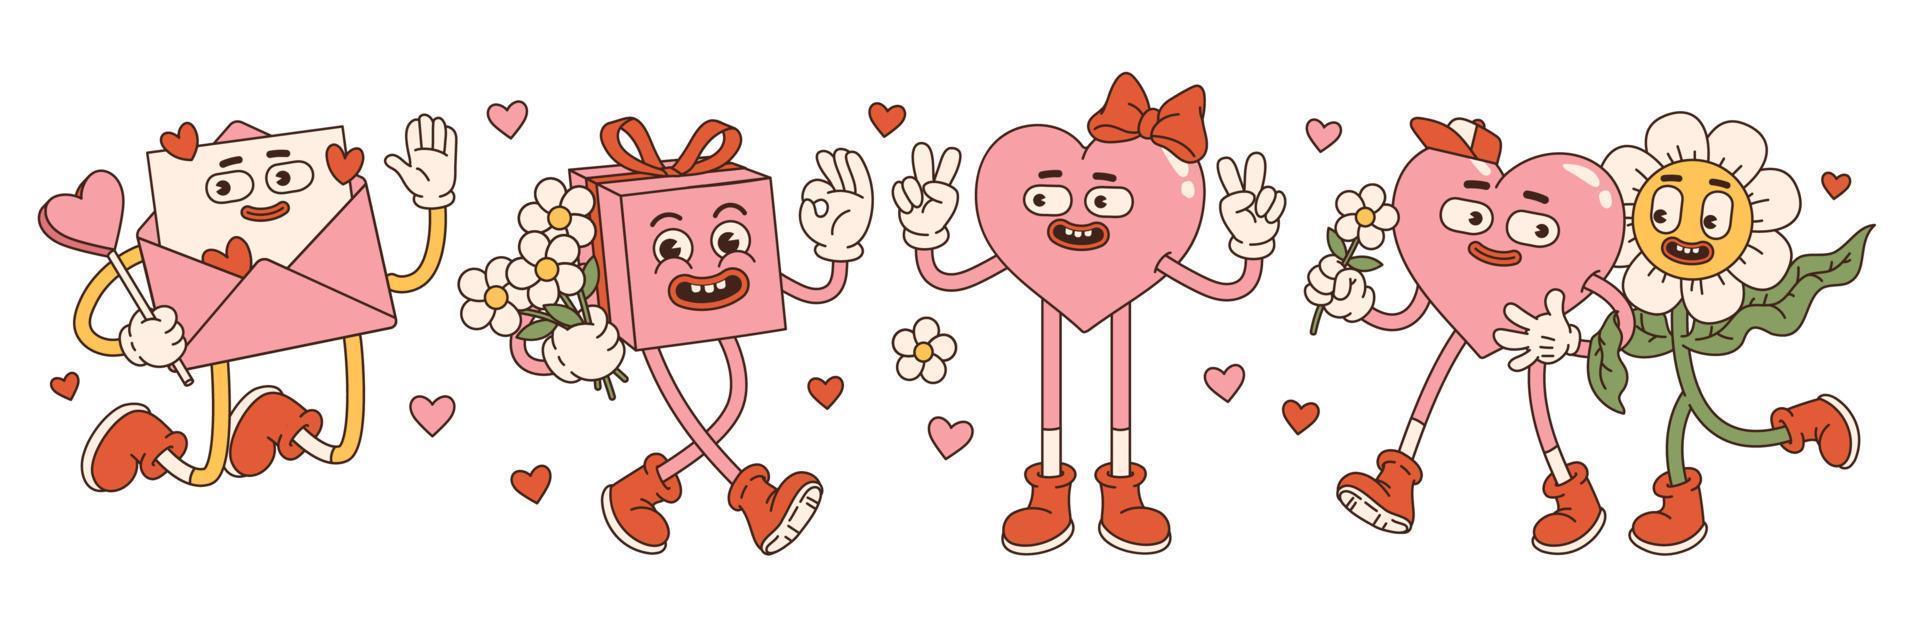 Groovy bello cuori adesivi. amore concetto. contento san valentino giorno. rosa e rosso colori. vettore